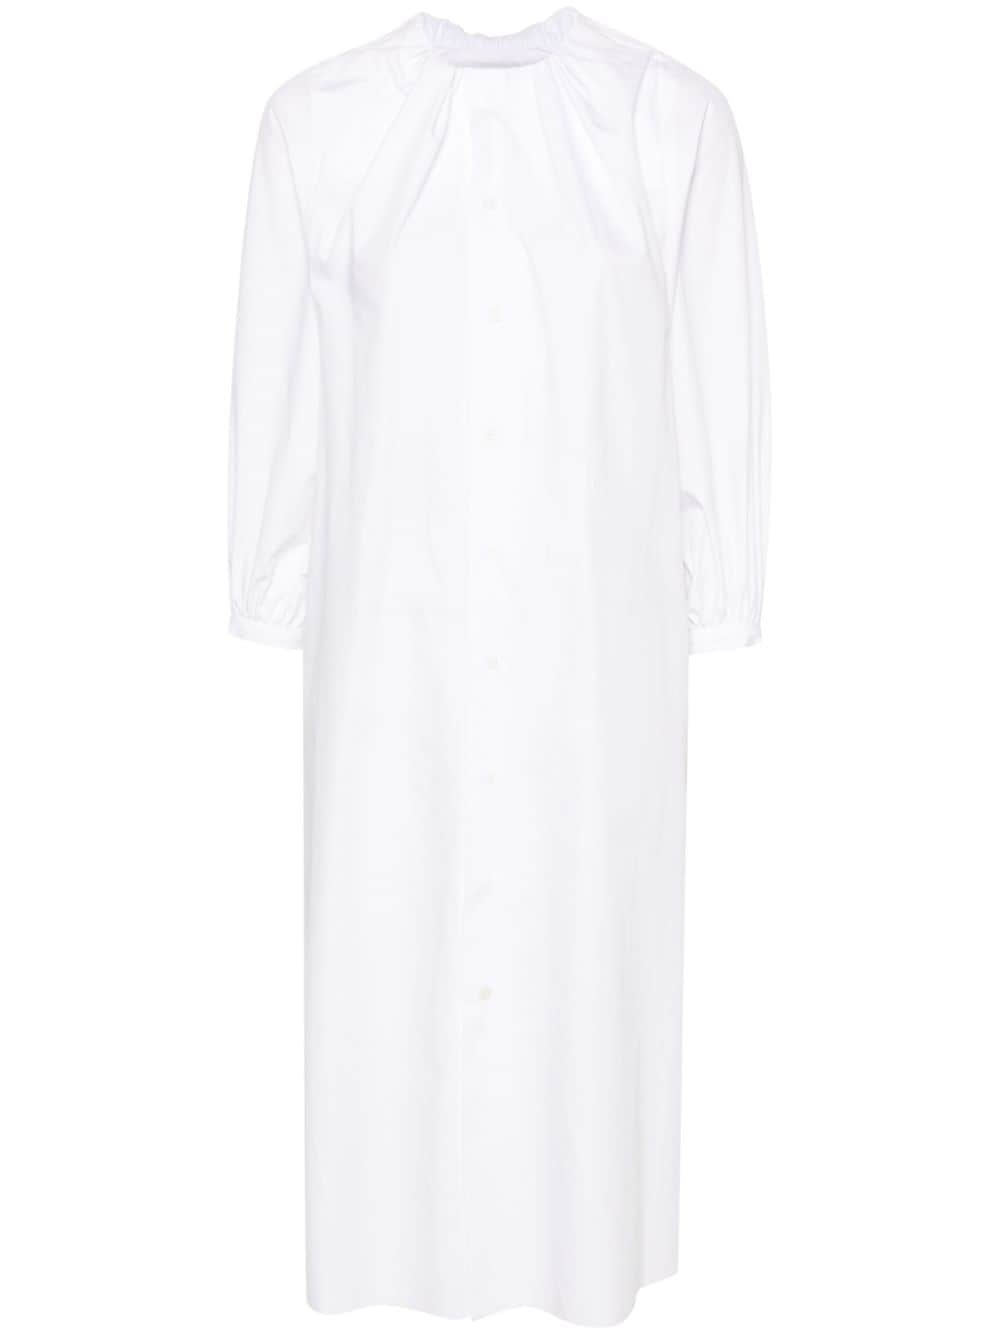 cotton poplin shirt dress - 1